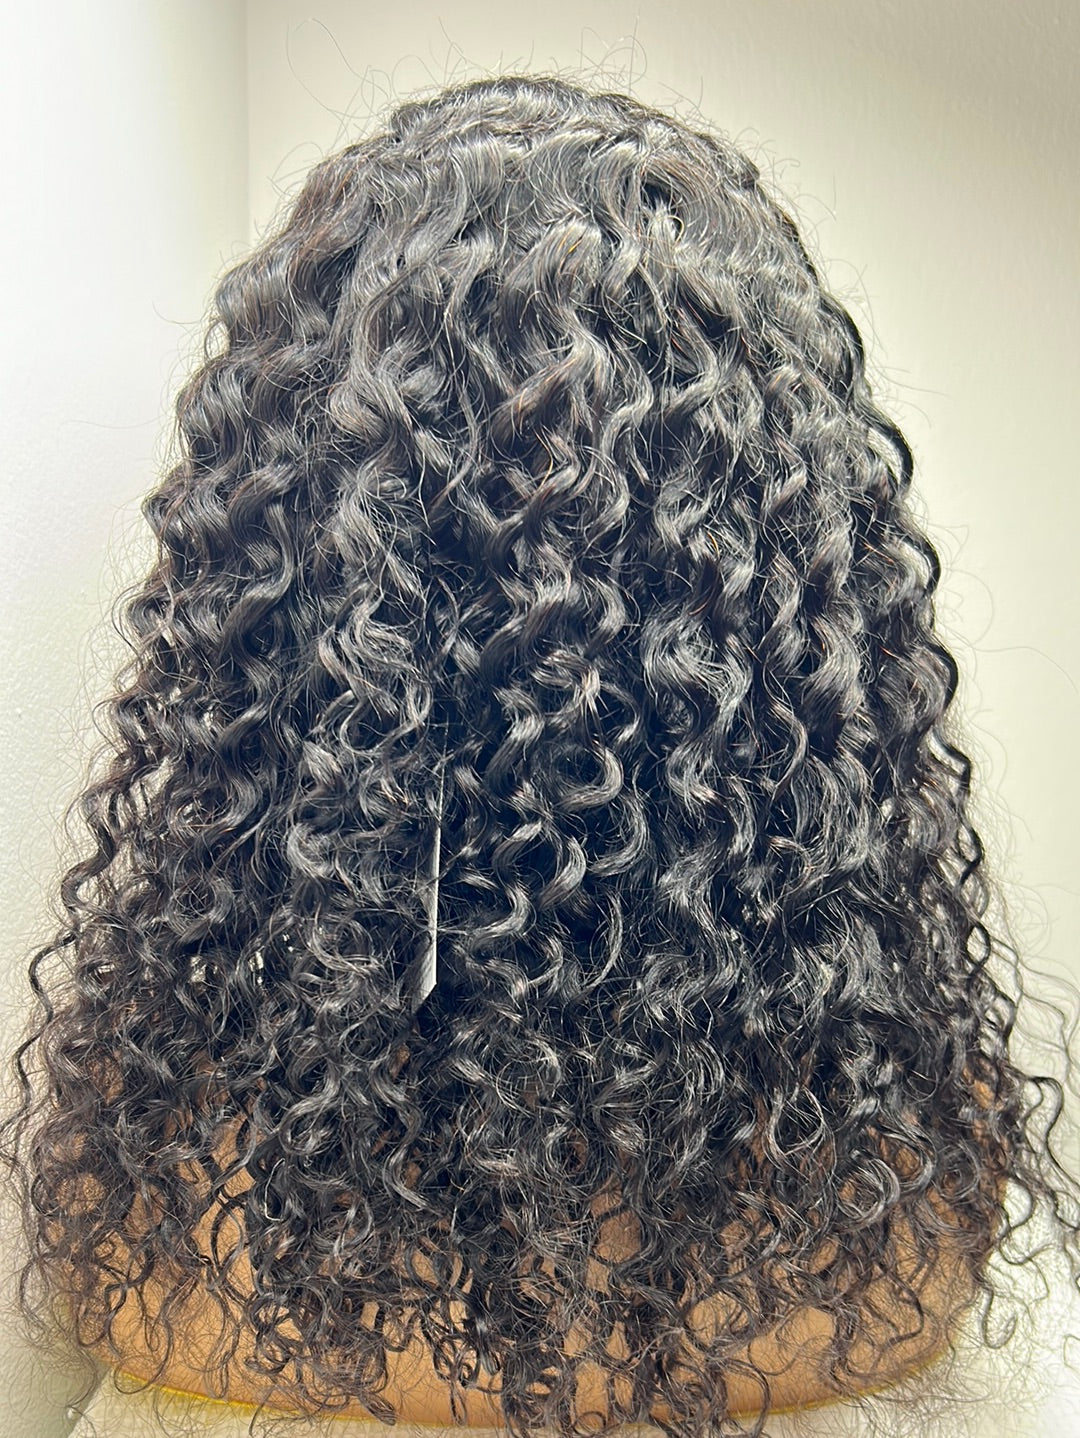 18” Curly Headband Wig